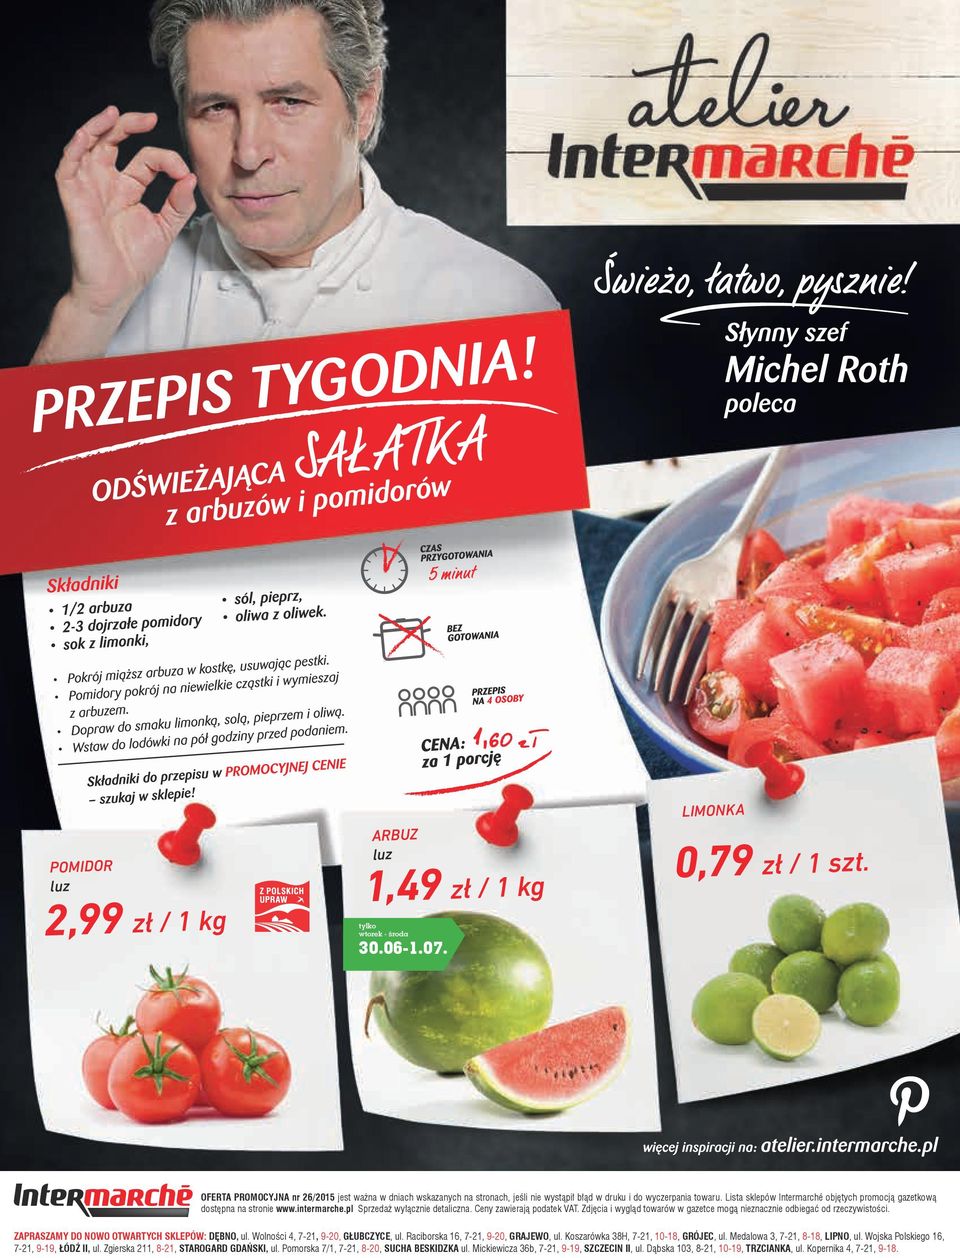 Lista sklepów Intermarché objętych promocją gazetkową dostępna na stronie www.intermarche.pl Sprzedaż wyłącznie detaliczna. Ceny zawierają podatek VAT.